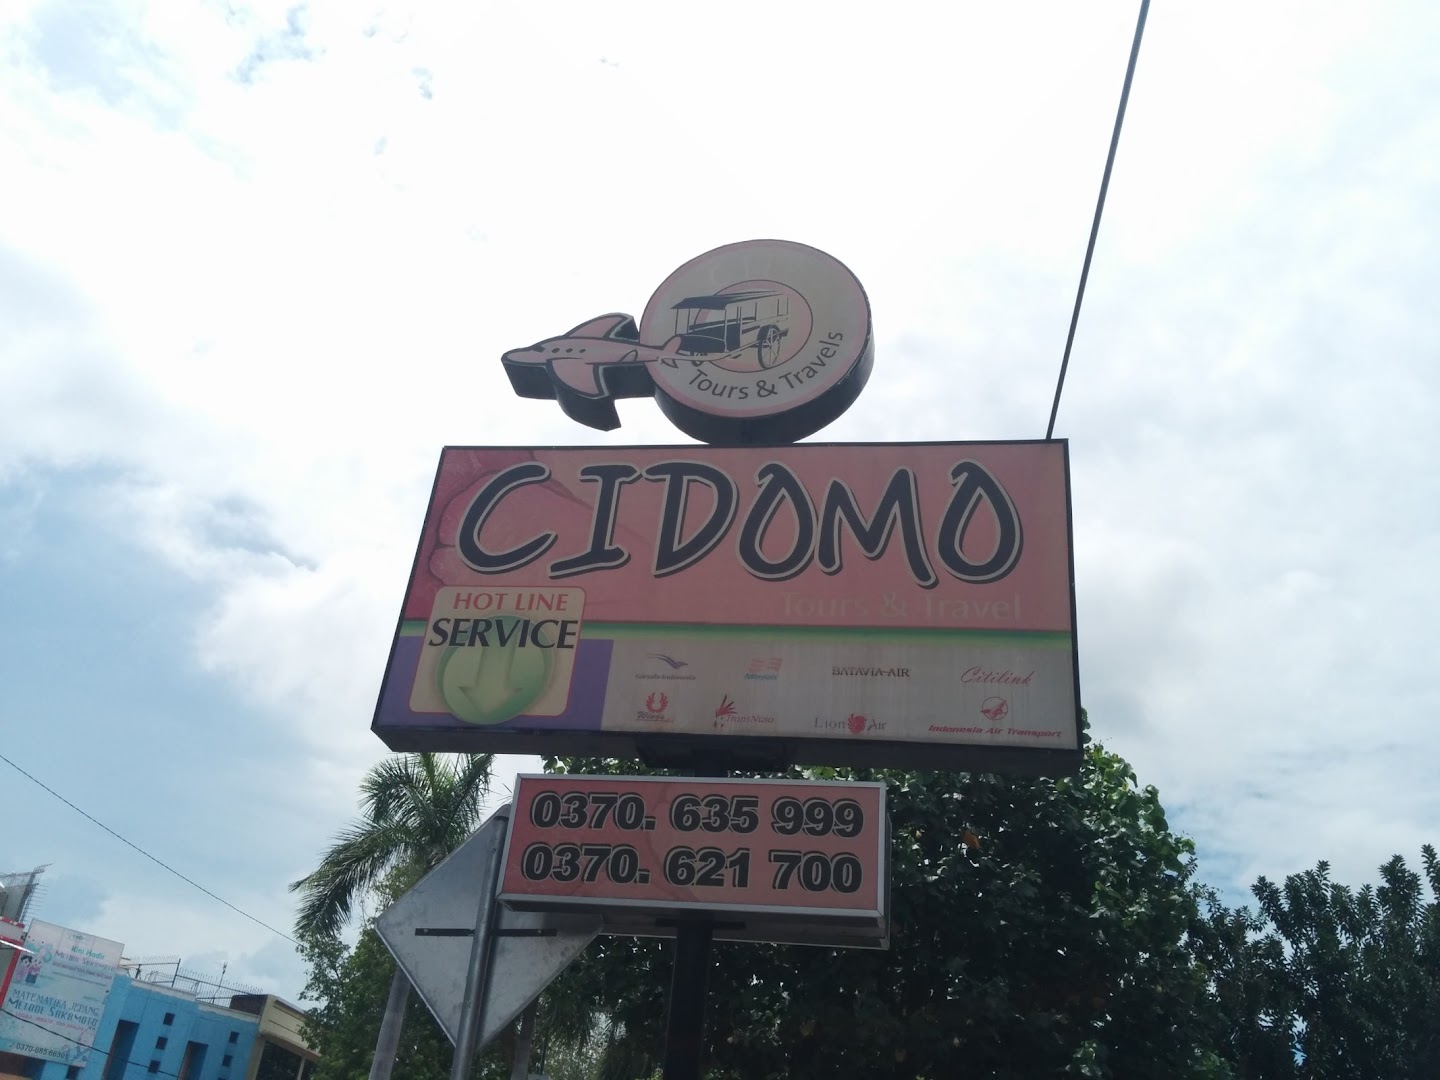 Cidomo Tours & Travel Photo